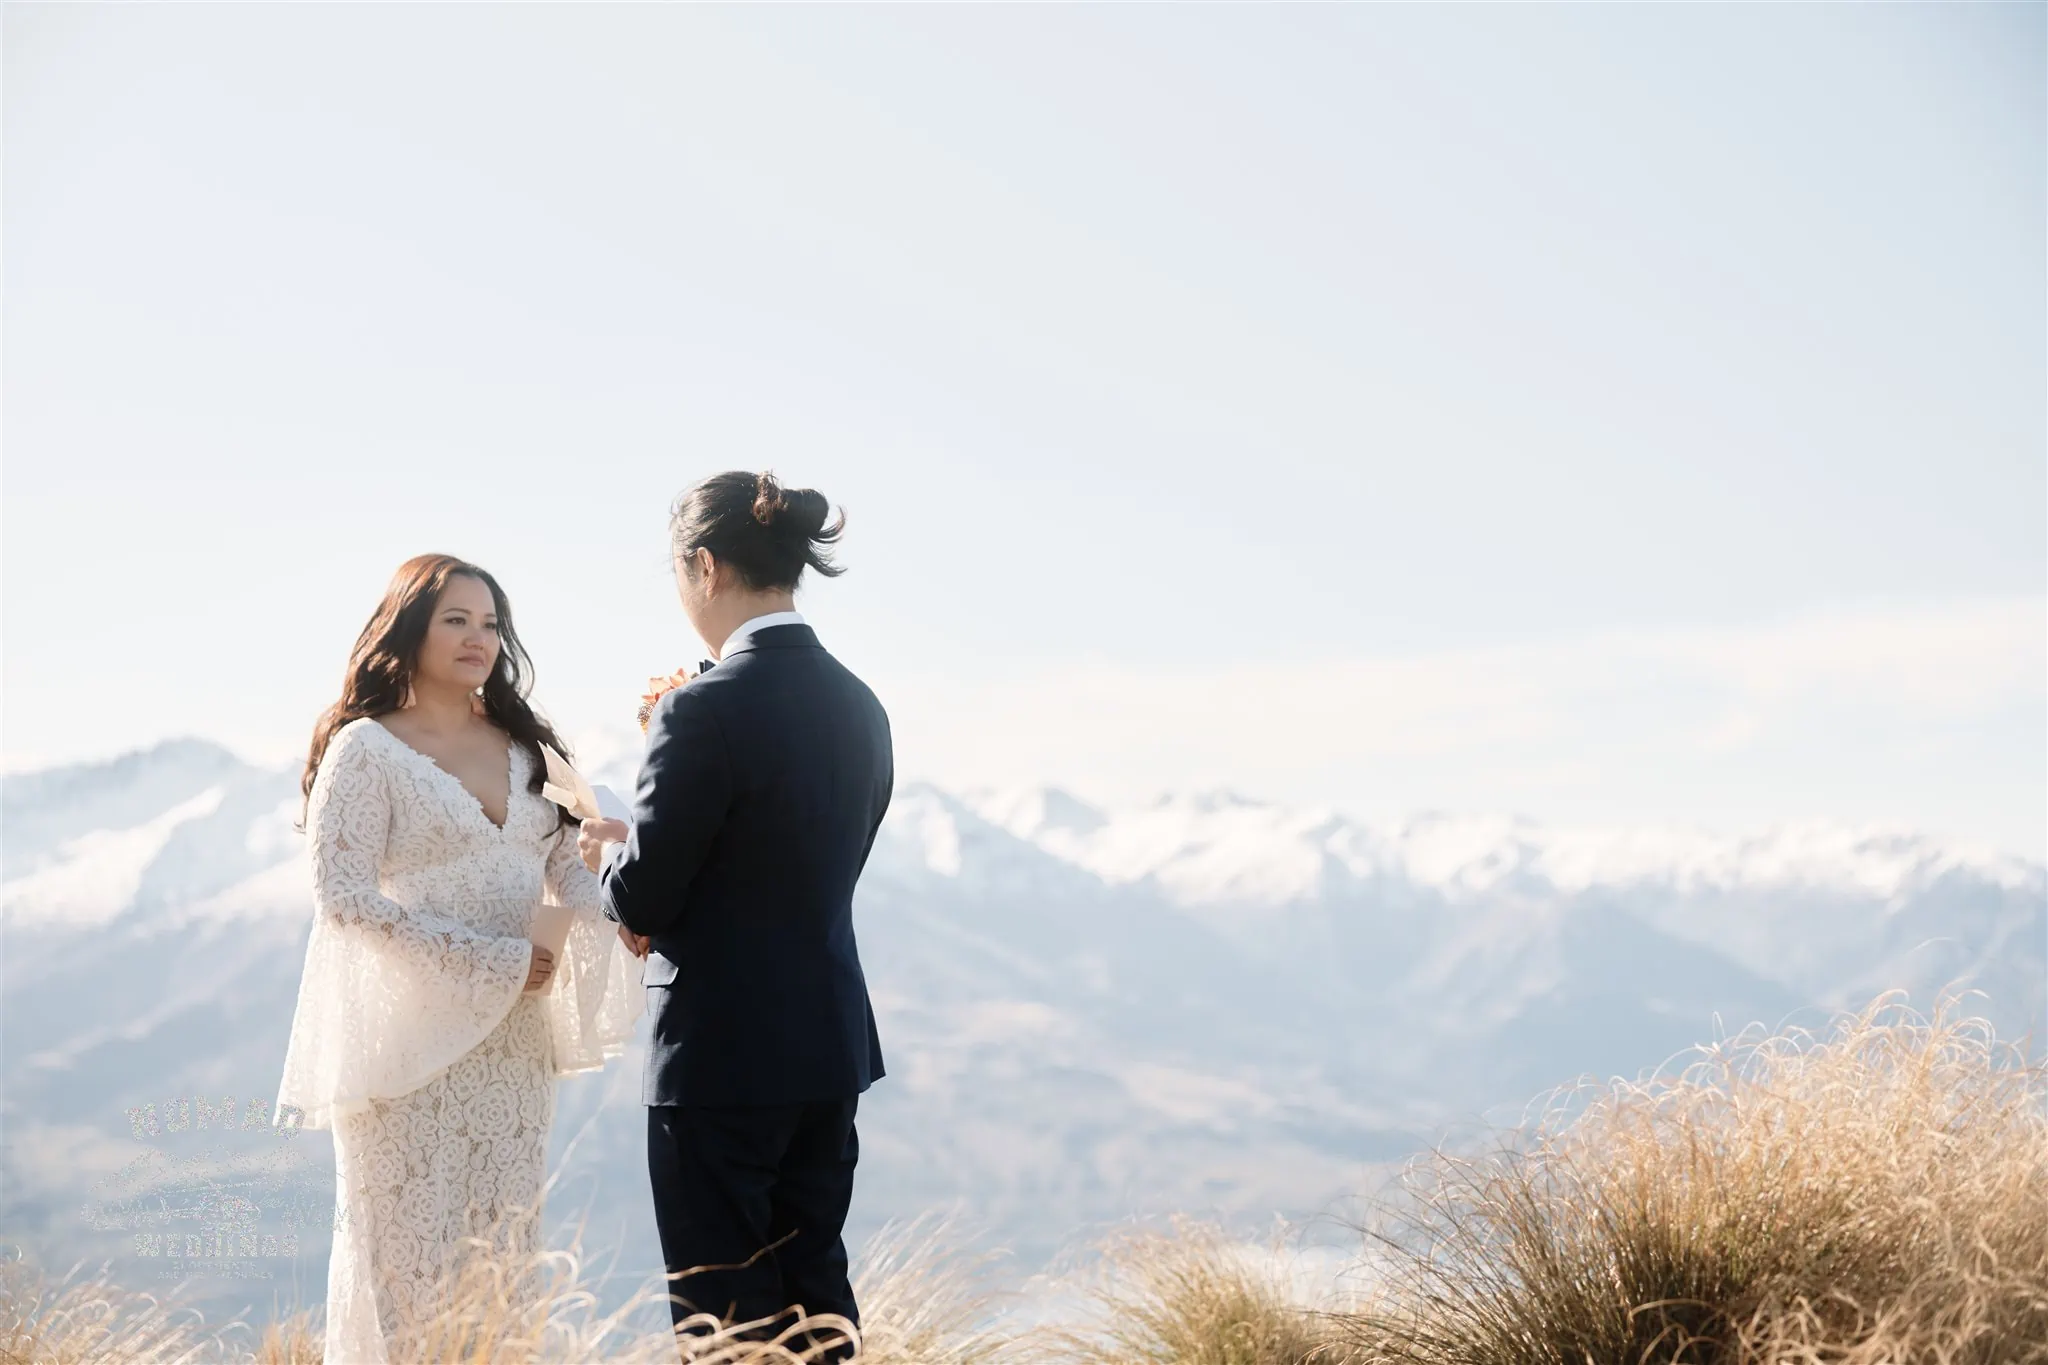 Queenstown New Zealand Coromandel Peak Heli Elopement Wedding Photographer.jpg